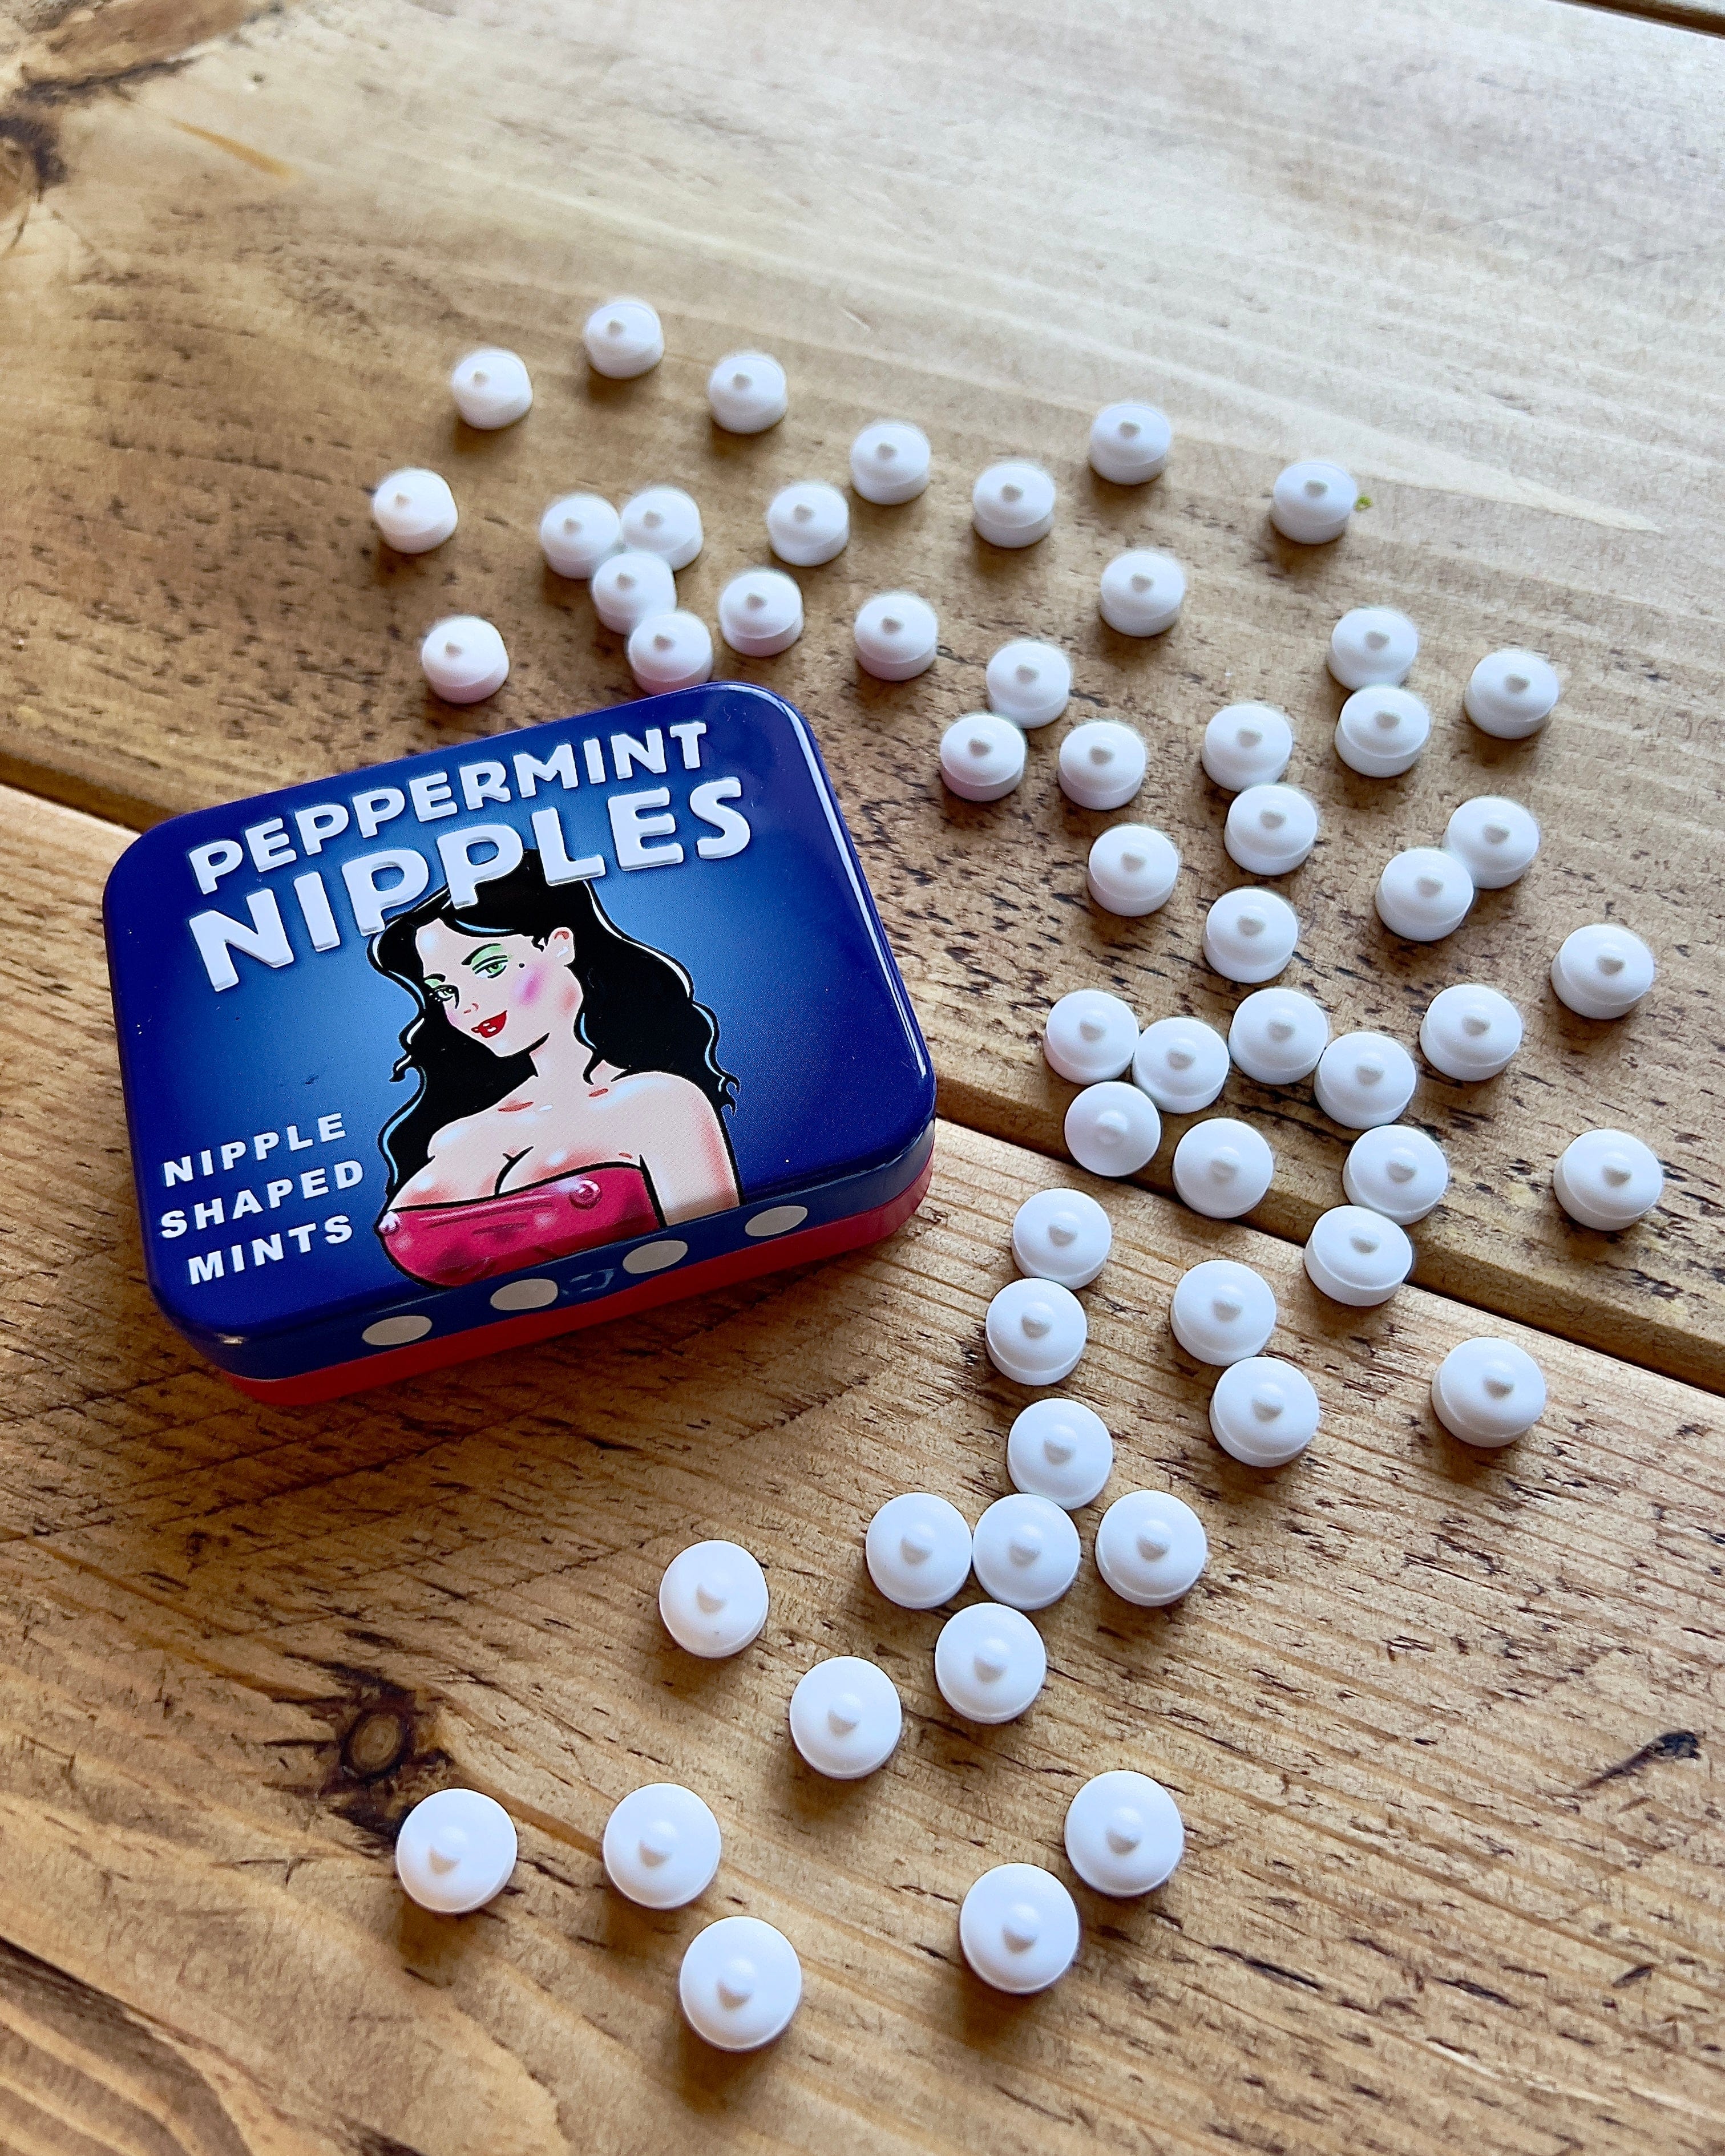 Peppermint Nipples Mints